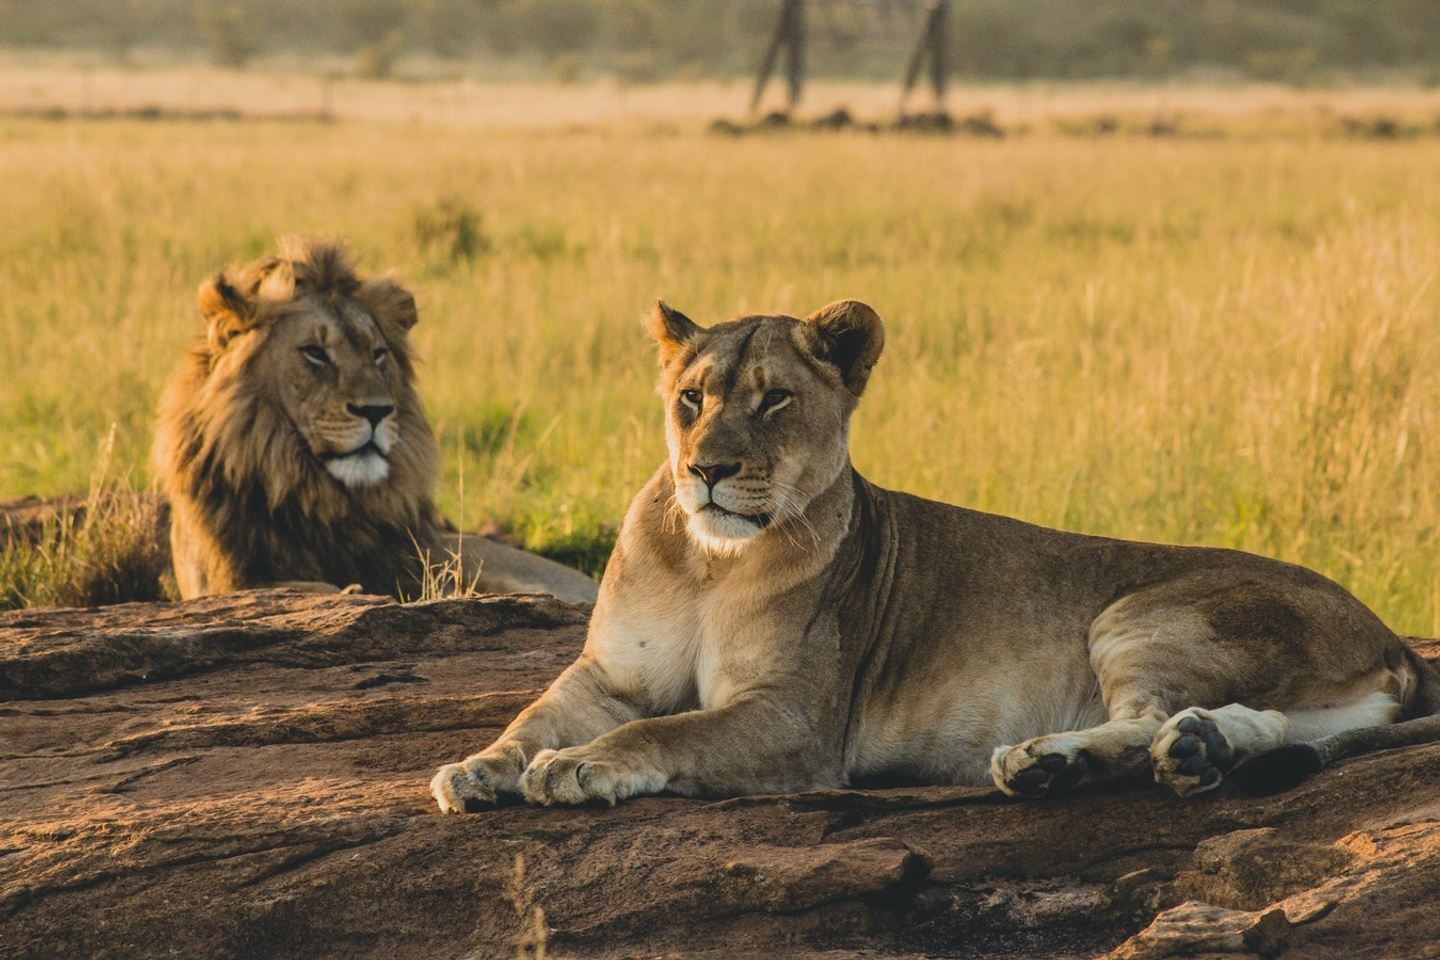 4 Days Serengeti and Ngorongoro Crater Safari